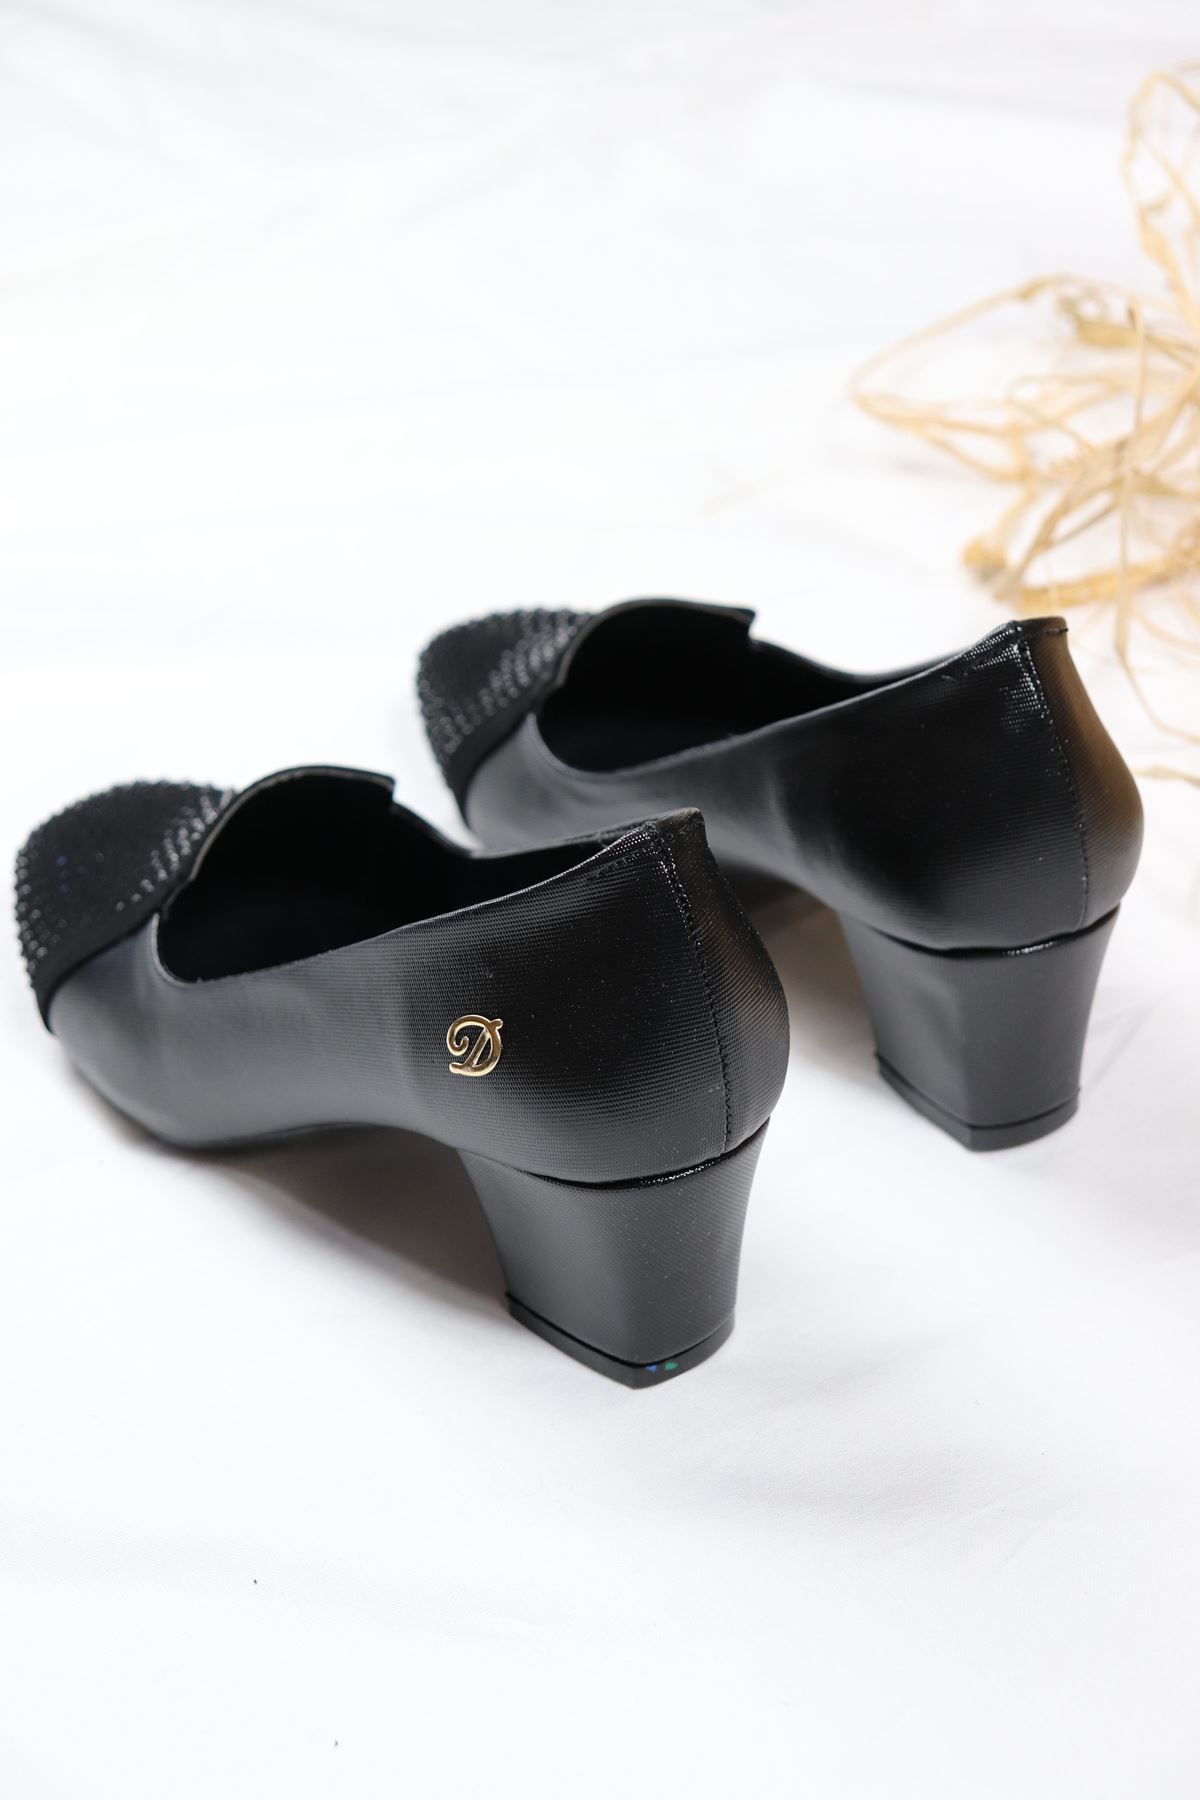 Trendayakkabı - Kalın Topuk Süet Detaylı Kadın Ayakkabısı